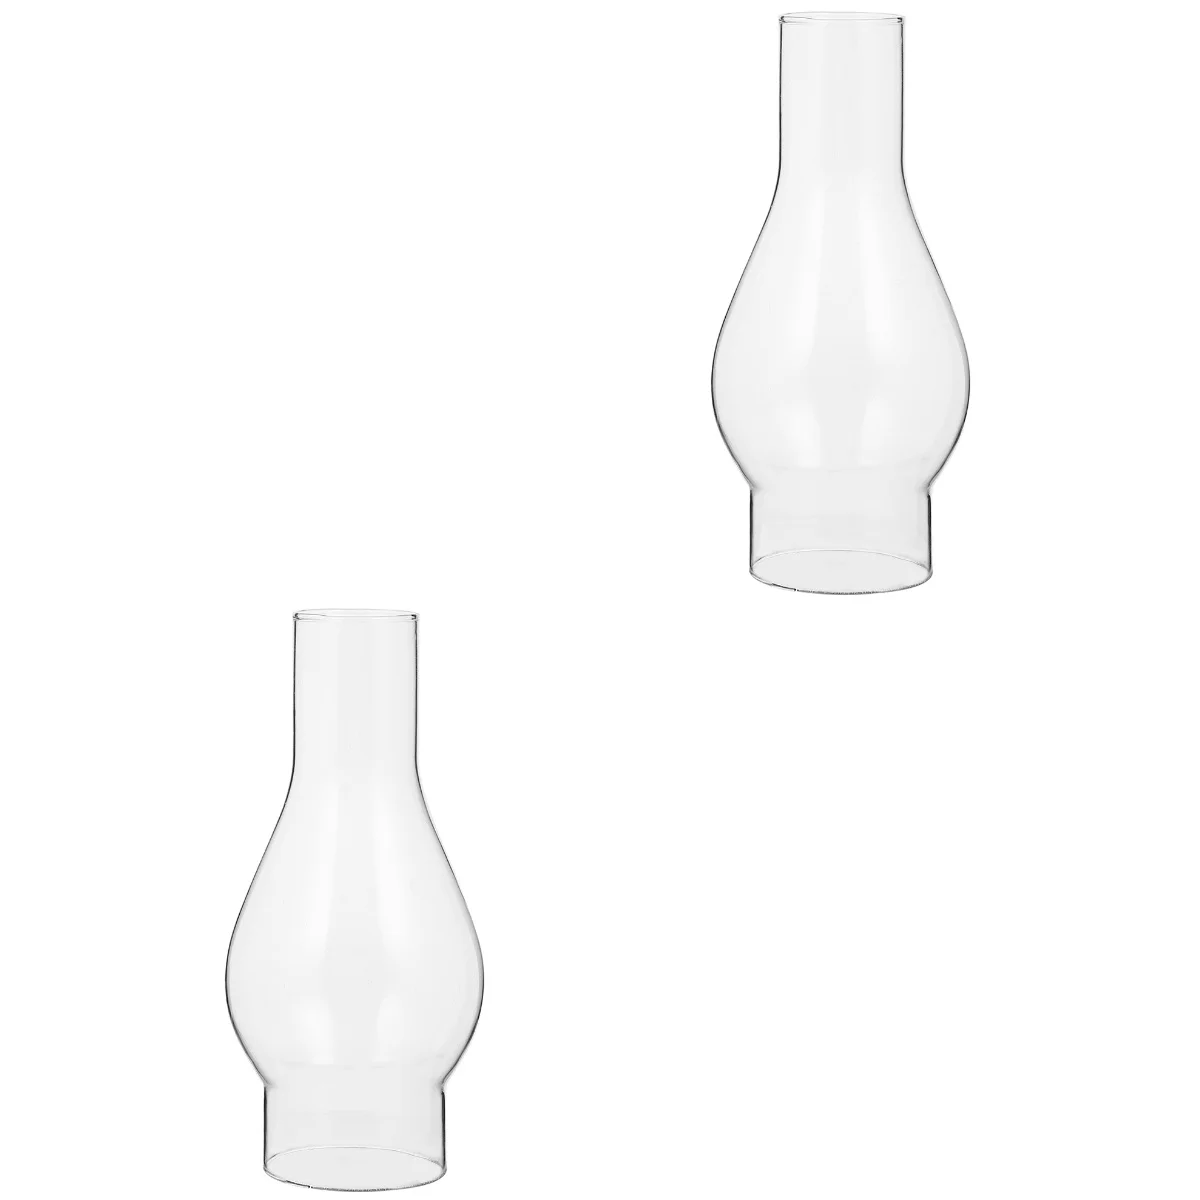 

2 шт. винтажный абажур для лампы Керосиновая лампа для дымохода масляная лампа затеняющее стекло ветрозащитный абажур прозрачный стеклянный абажур